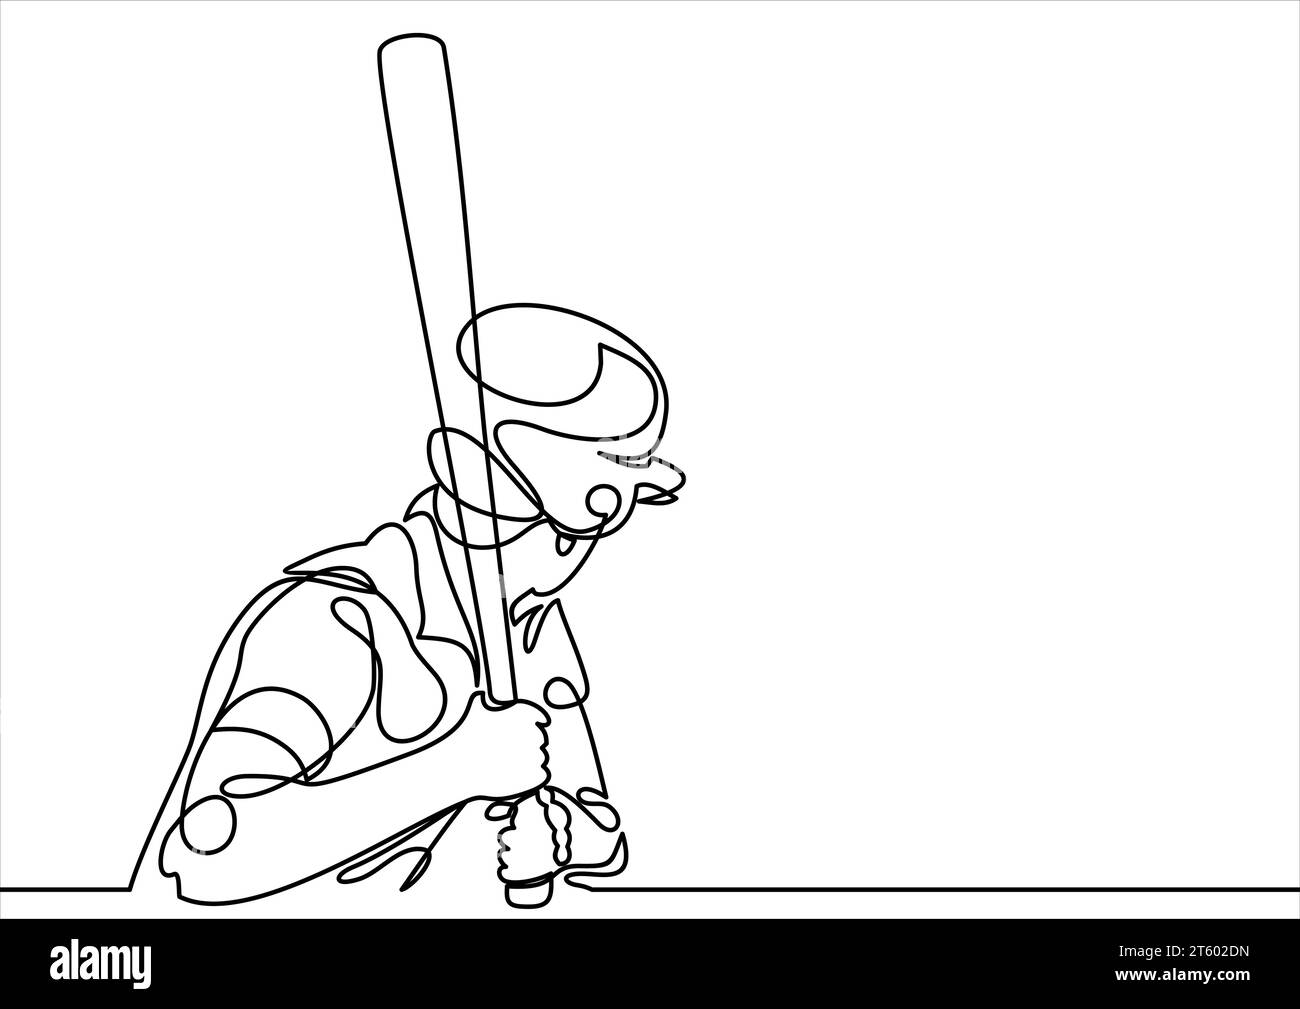 Vecteur de joueur de baseball - dessin de ligne continue Illustration de Vecteur